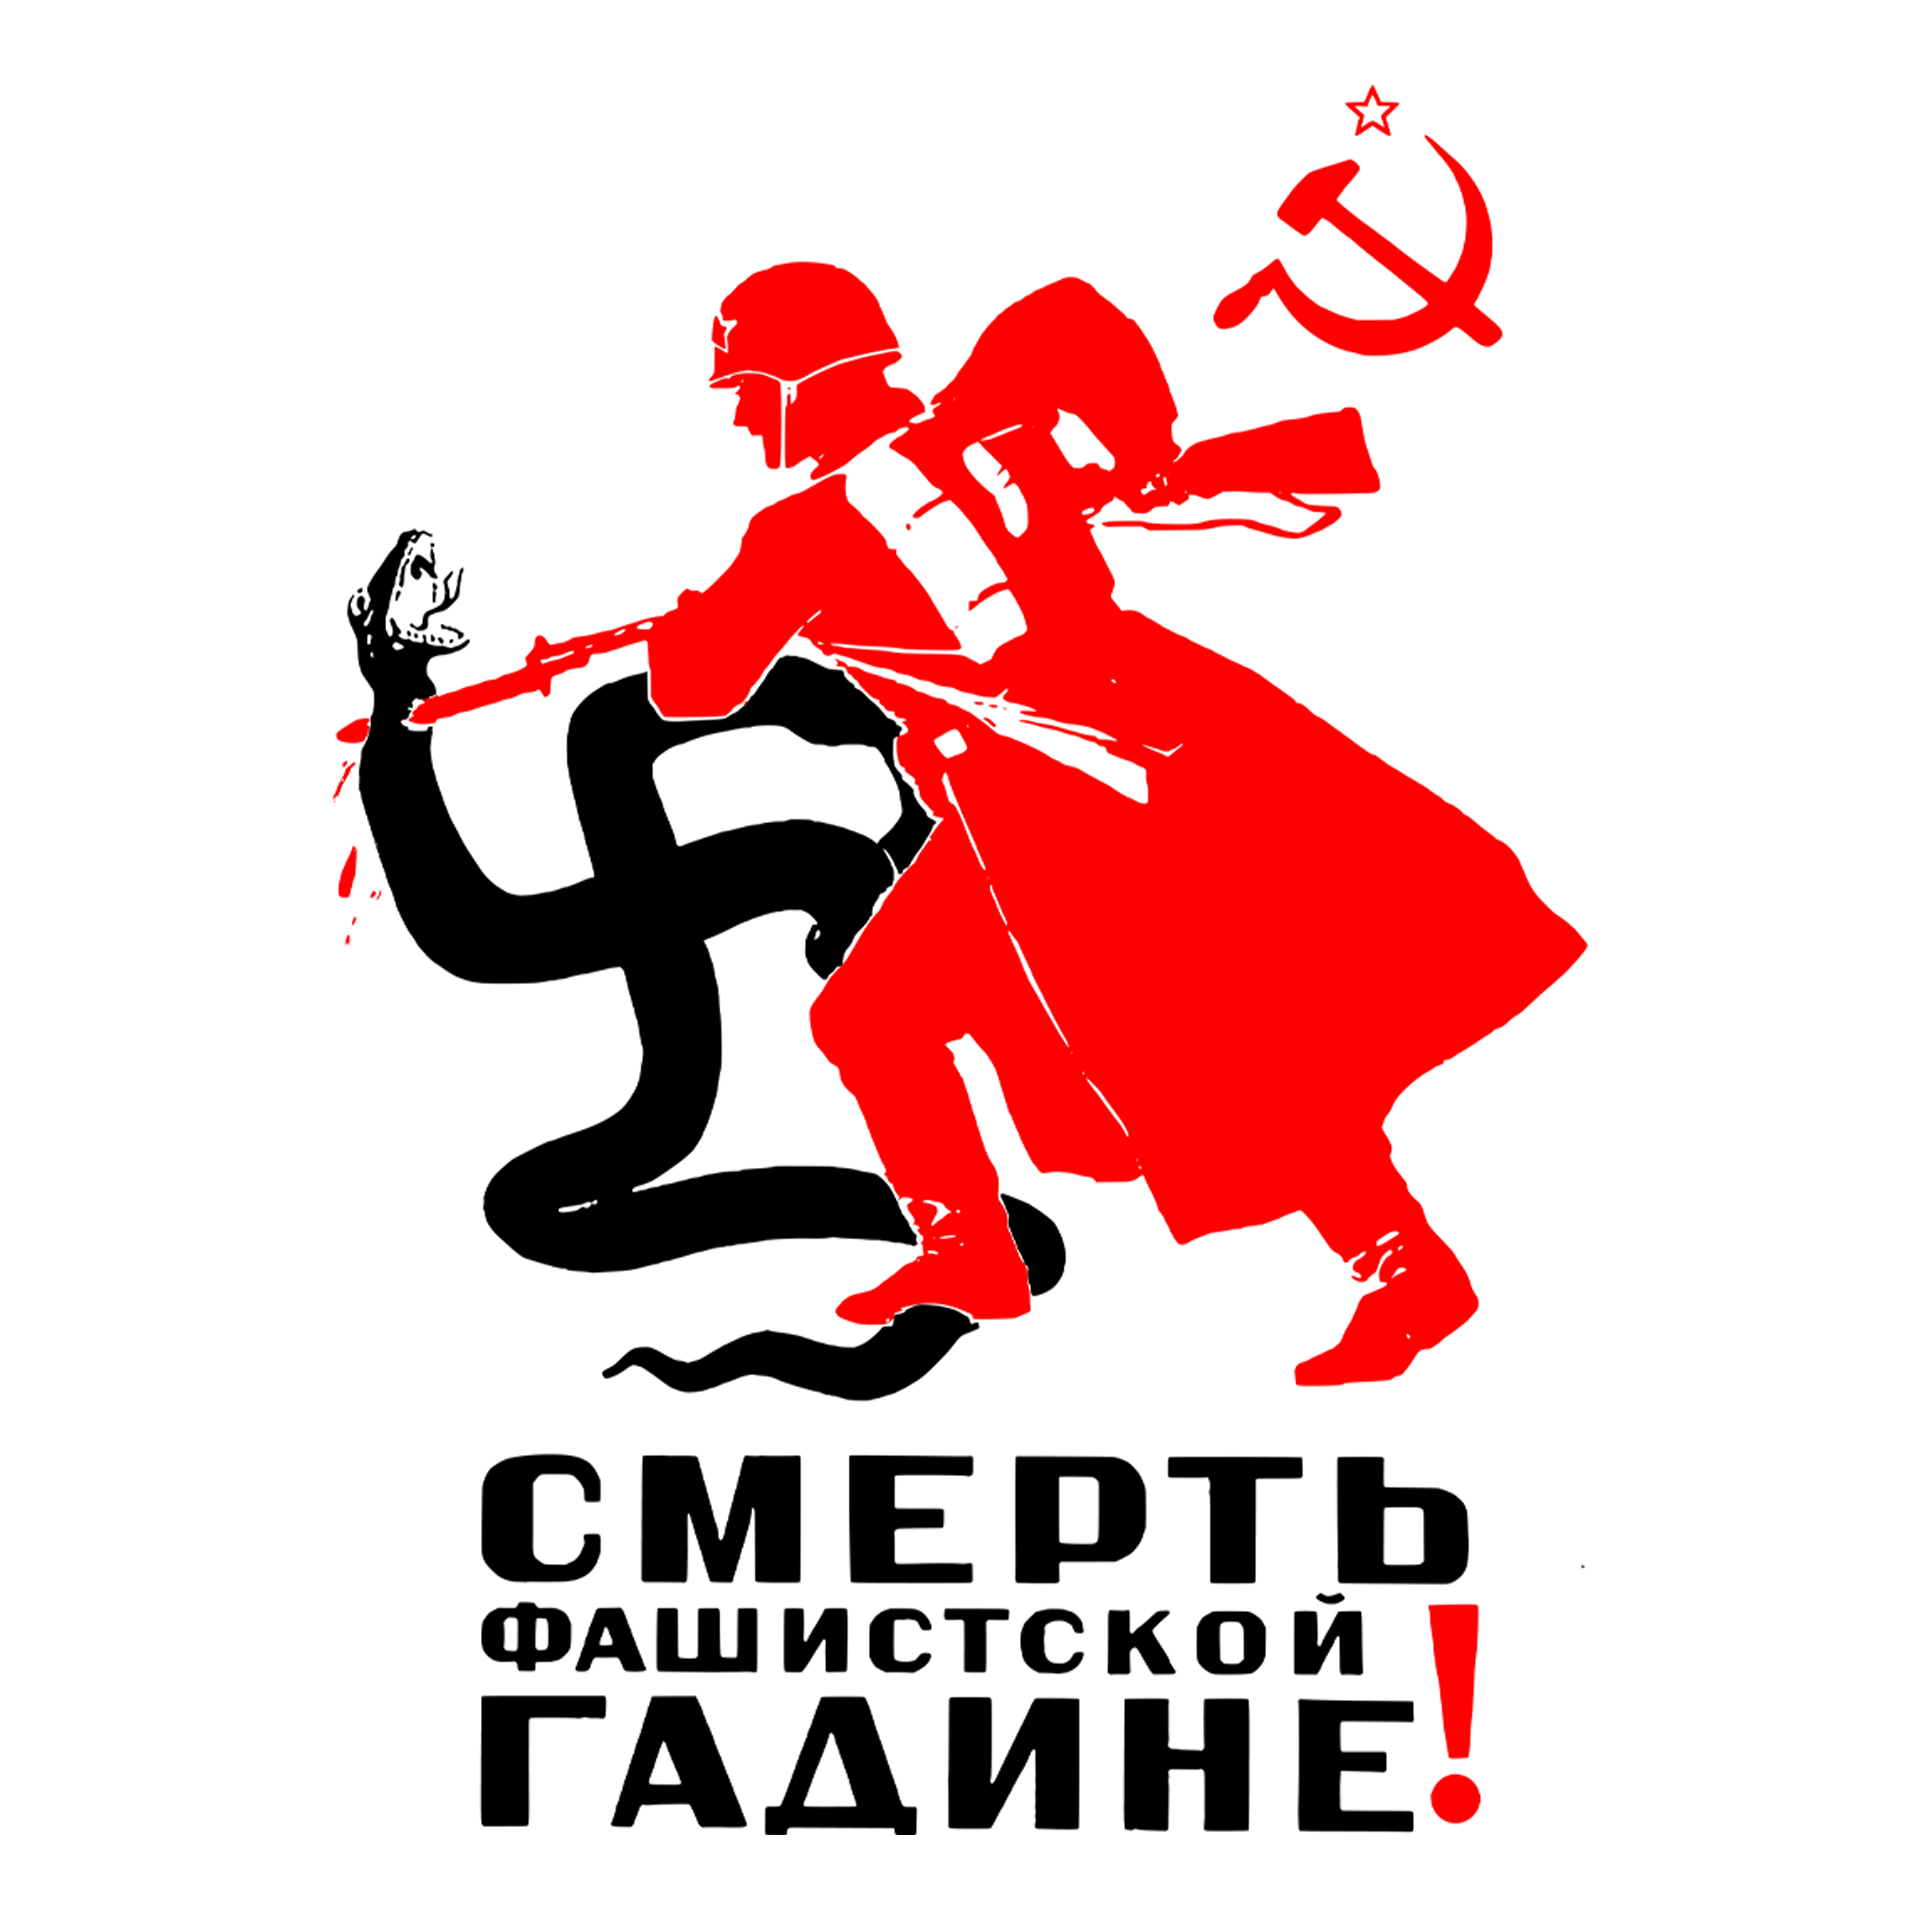 À esquerda no topo um foice e martelo com uma estrela encima. No meio o desenho de um soldado soviético golpeando com uma baioneta uma cobra em formaato de suástica. Abaixo o texto em russo: destrua a besta nazista.